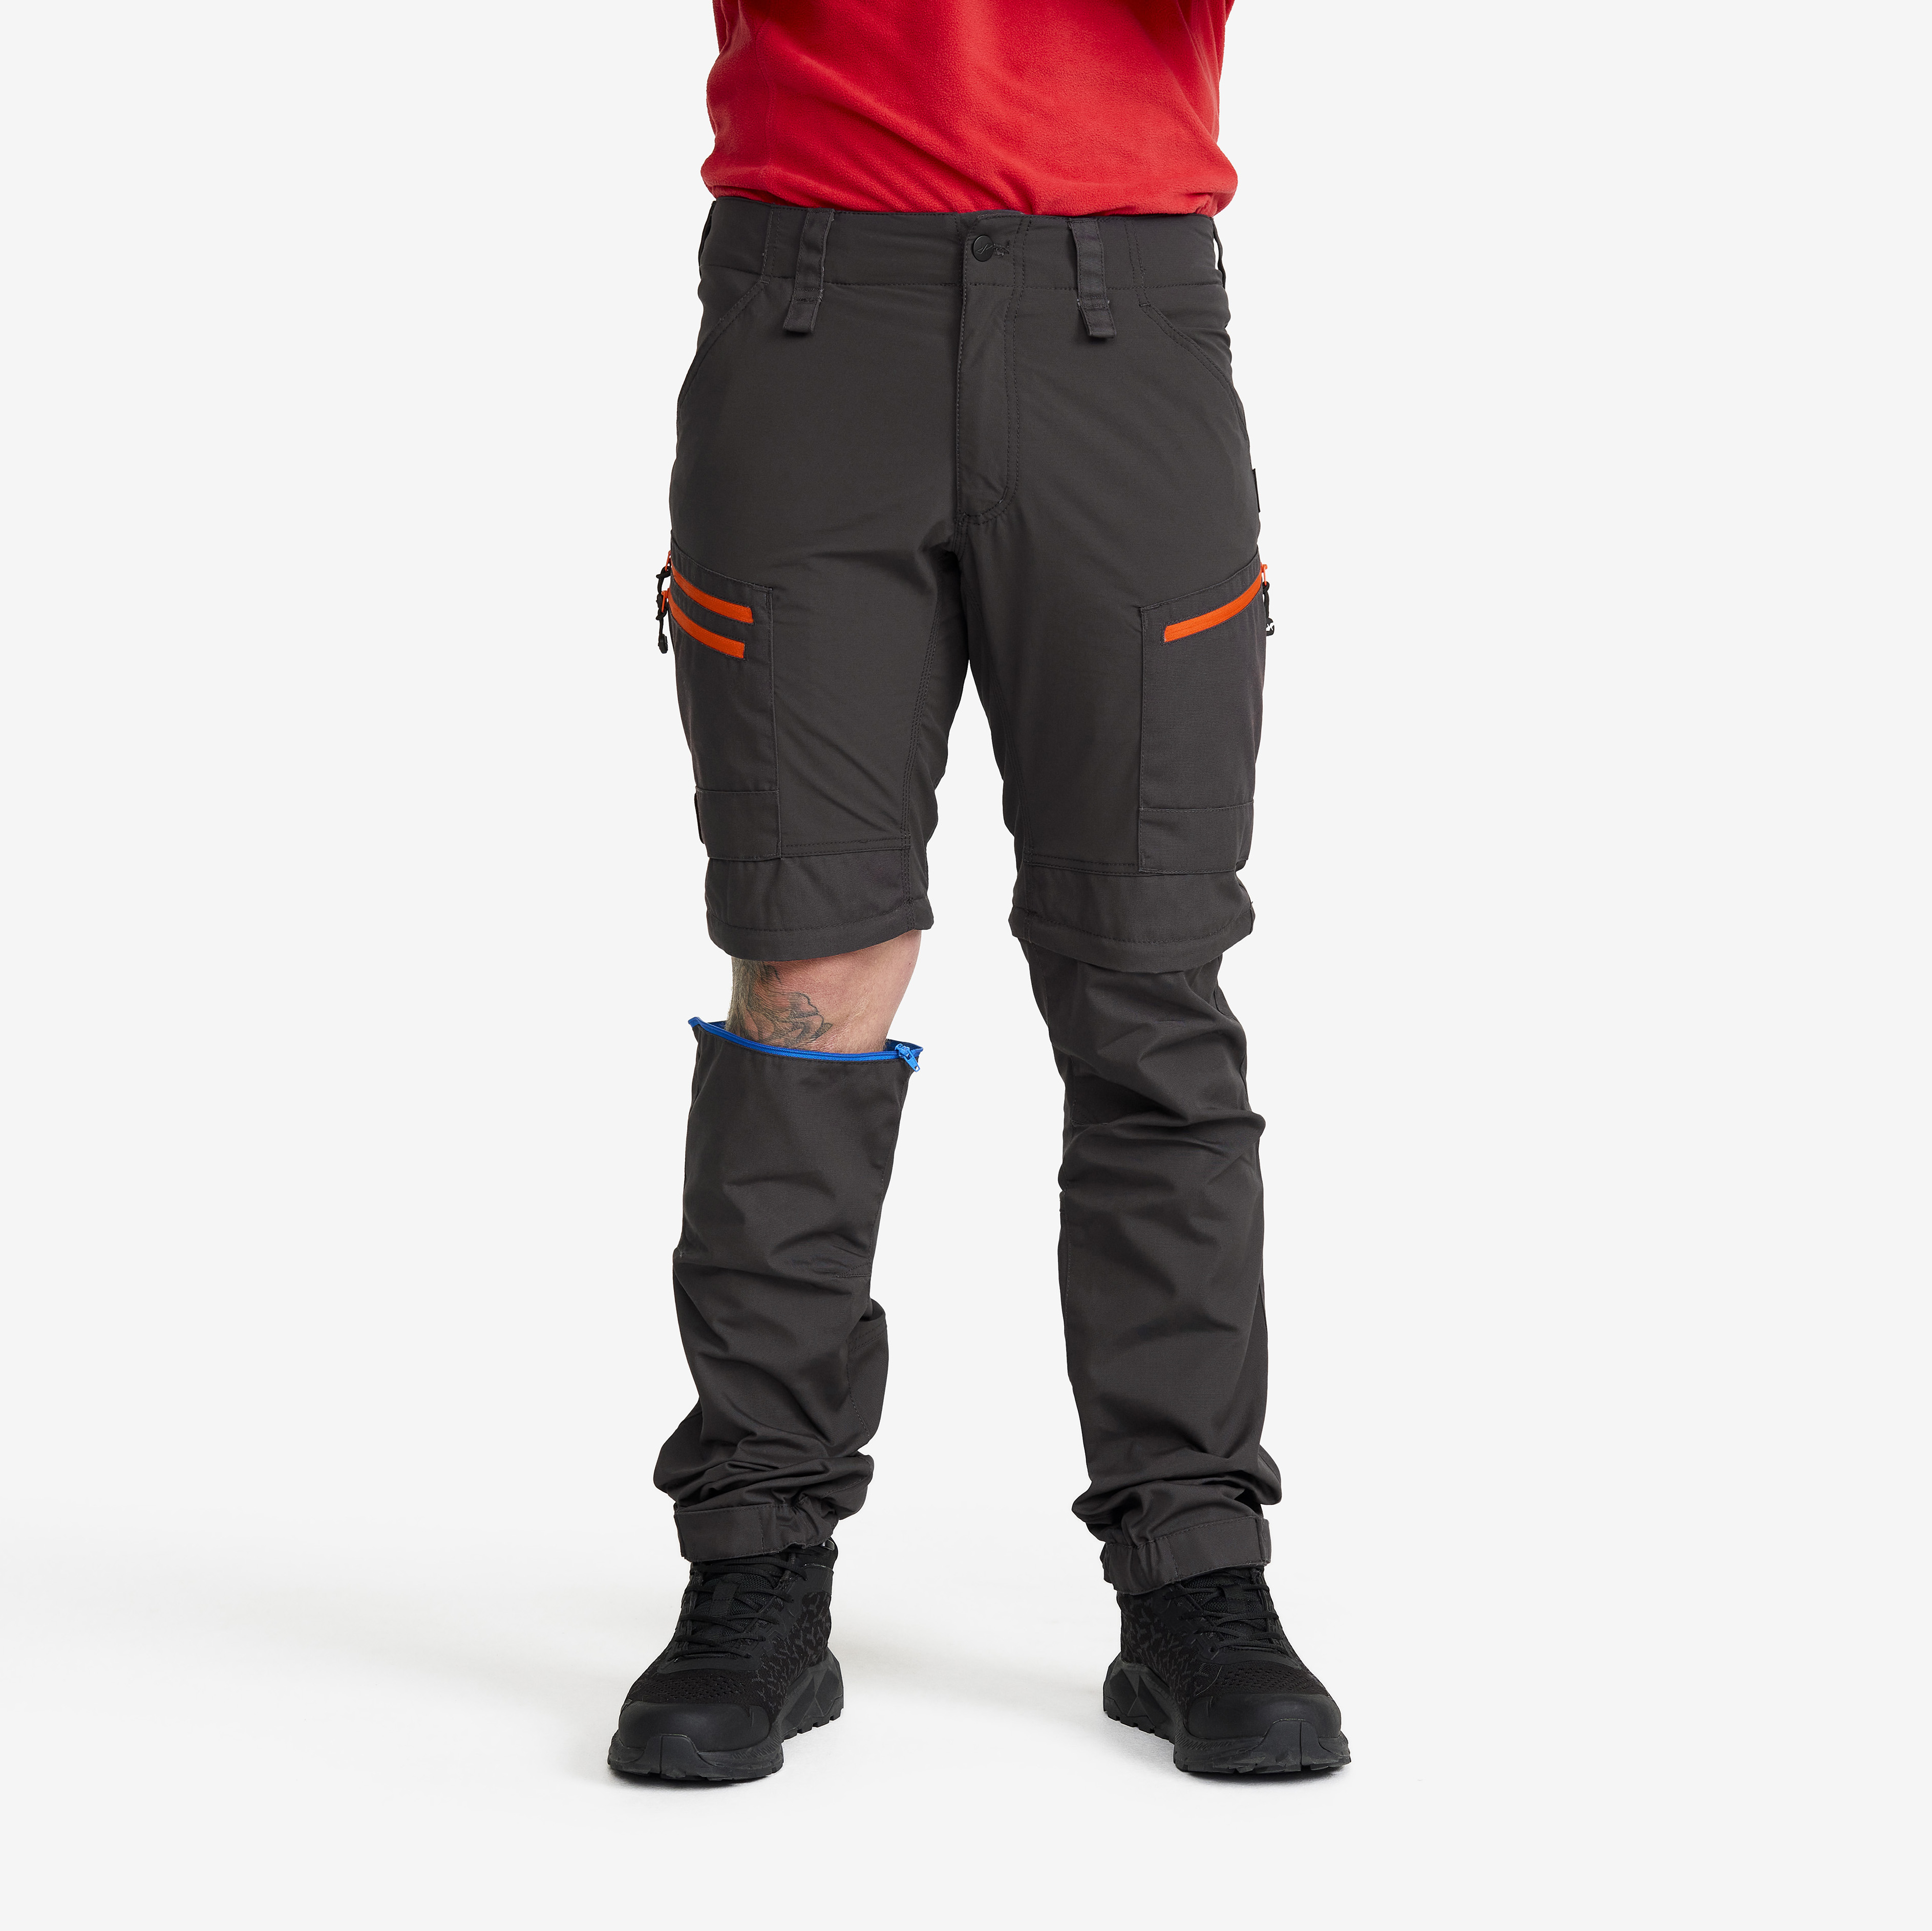 RVRC GP Pro Zip-off Pants Miehet Grey/Orange Koko:S – Zip-off-housut